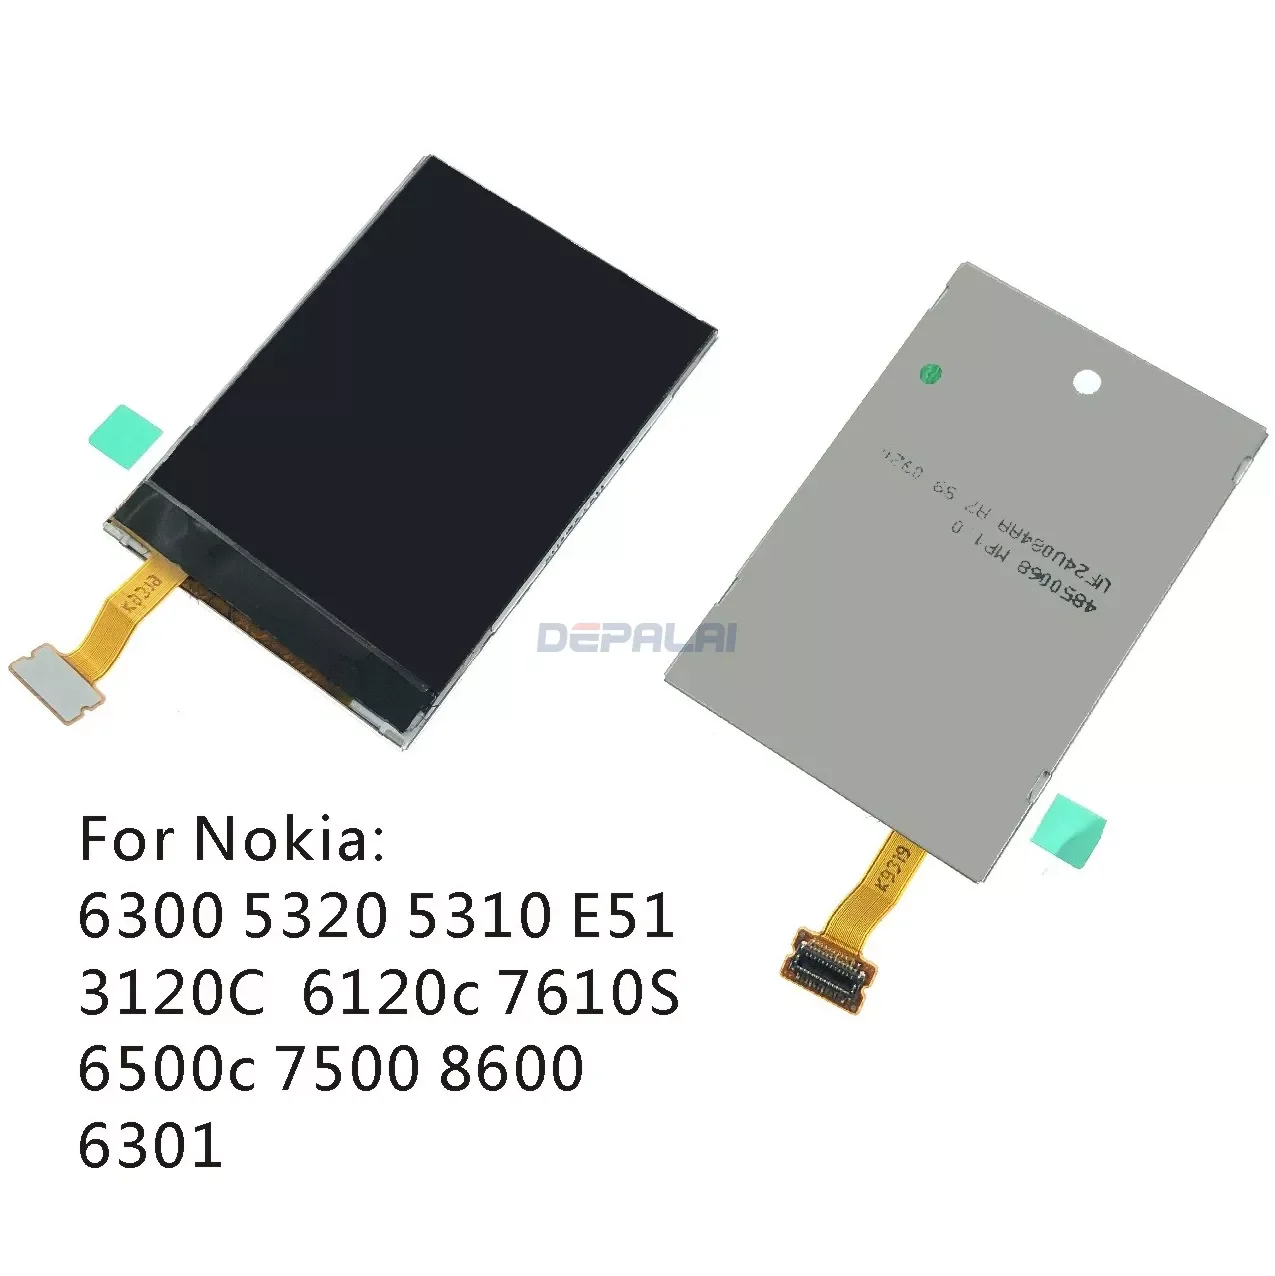 

LCD display For Nokia 6300 5310 6120C 5320 E51 N82 N78 N79 E66 E52 N81 N76 6220 5700 5610 6500S E65 6303 Replacement repair